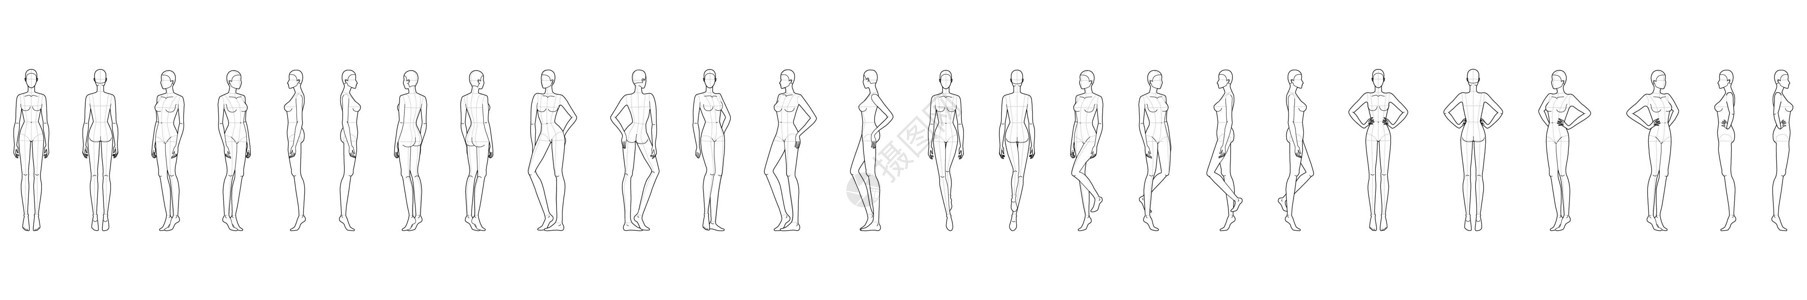 25名妇女的时装模版艺术女士女性身体女孩人体姿势解剖学冒充衣服图片